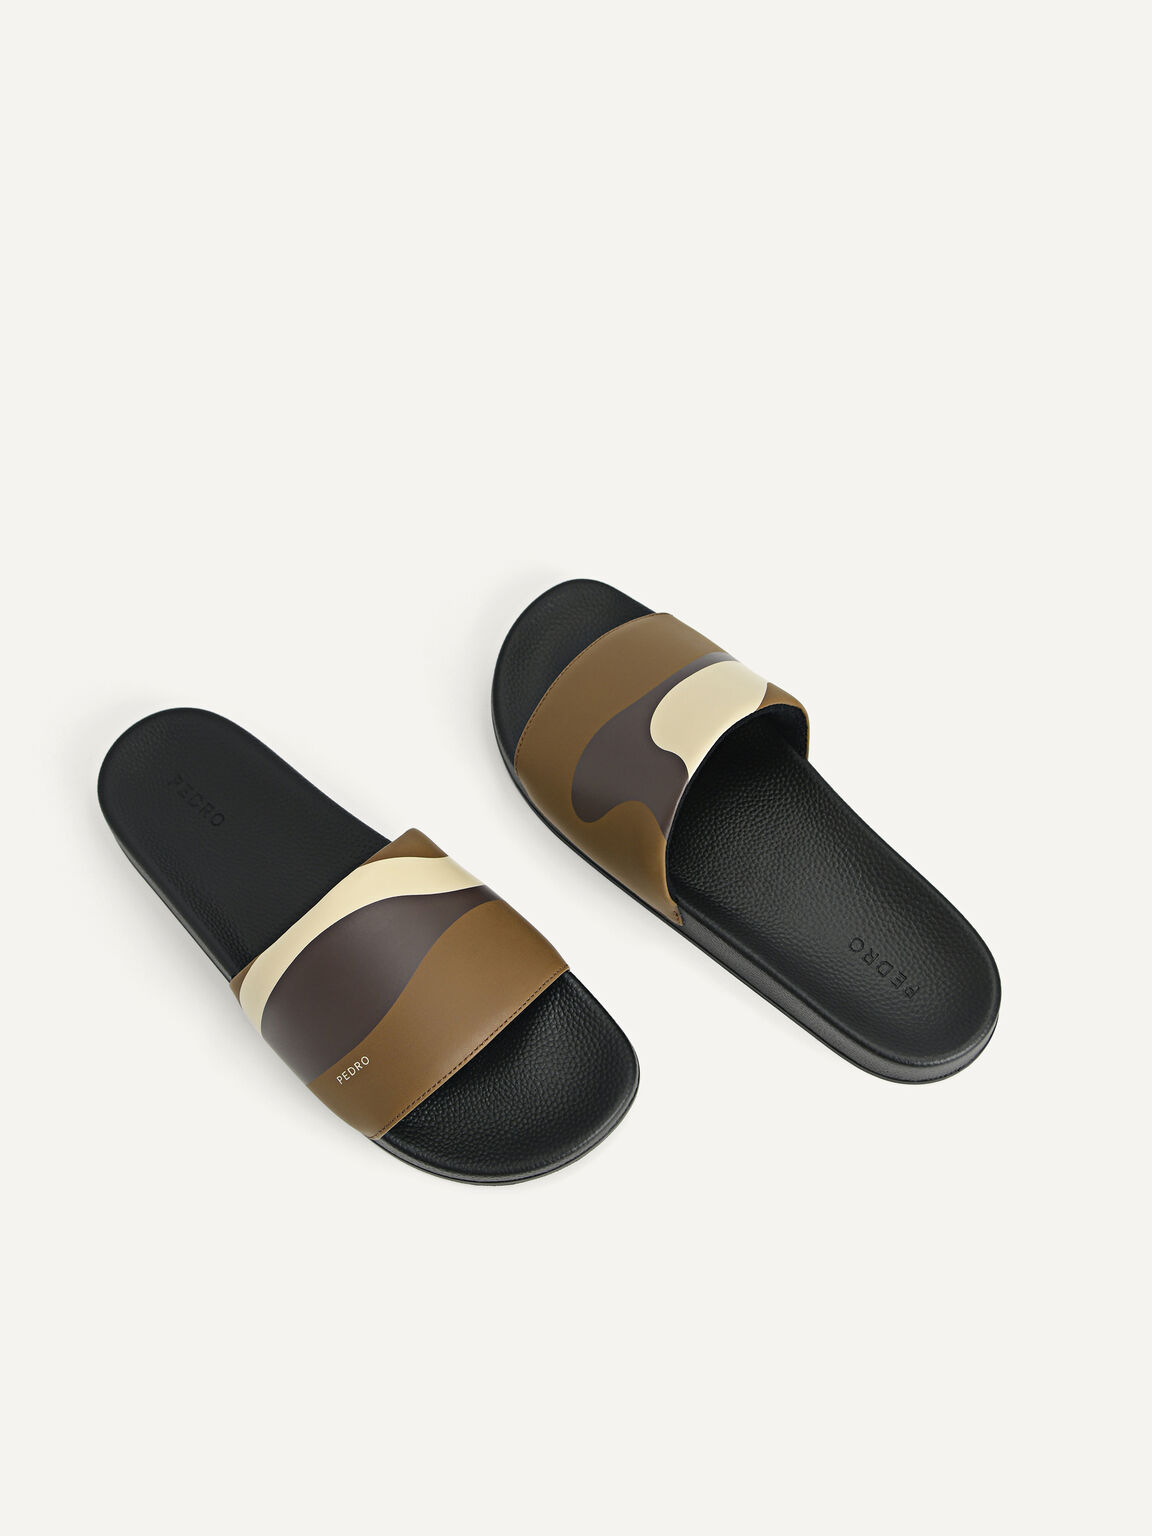 Printed Slide Sandals, Olive